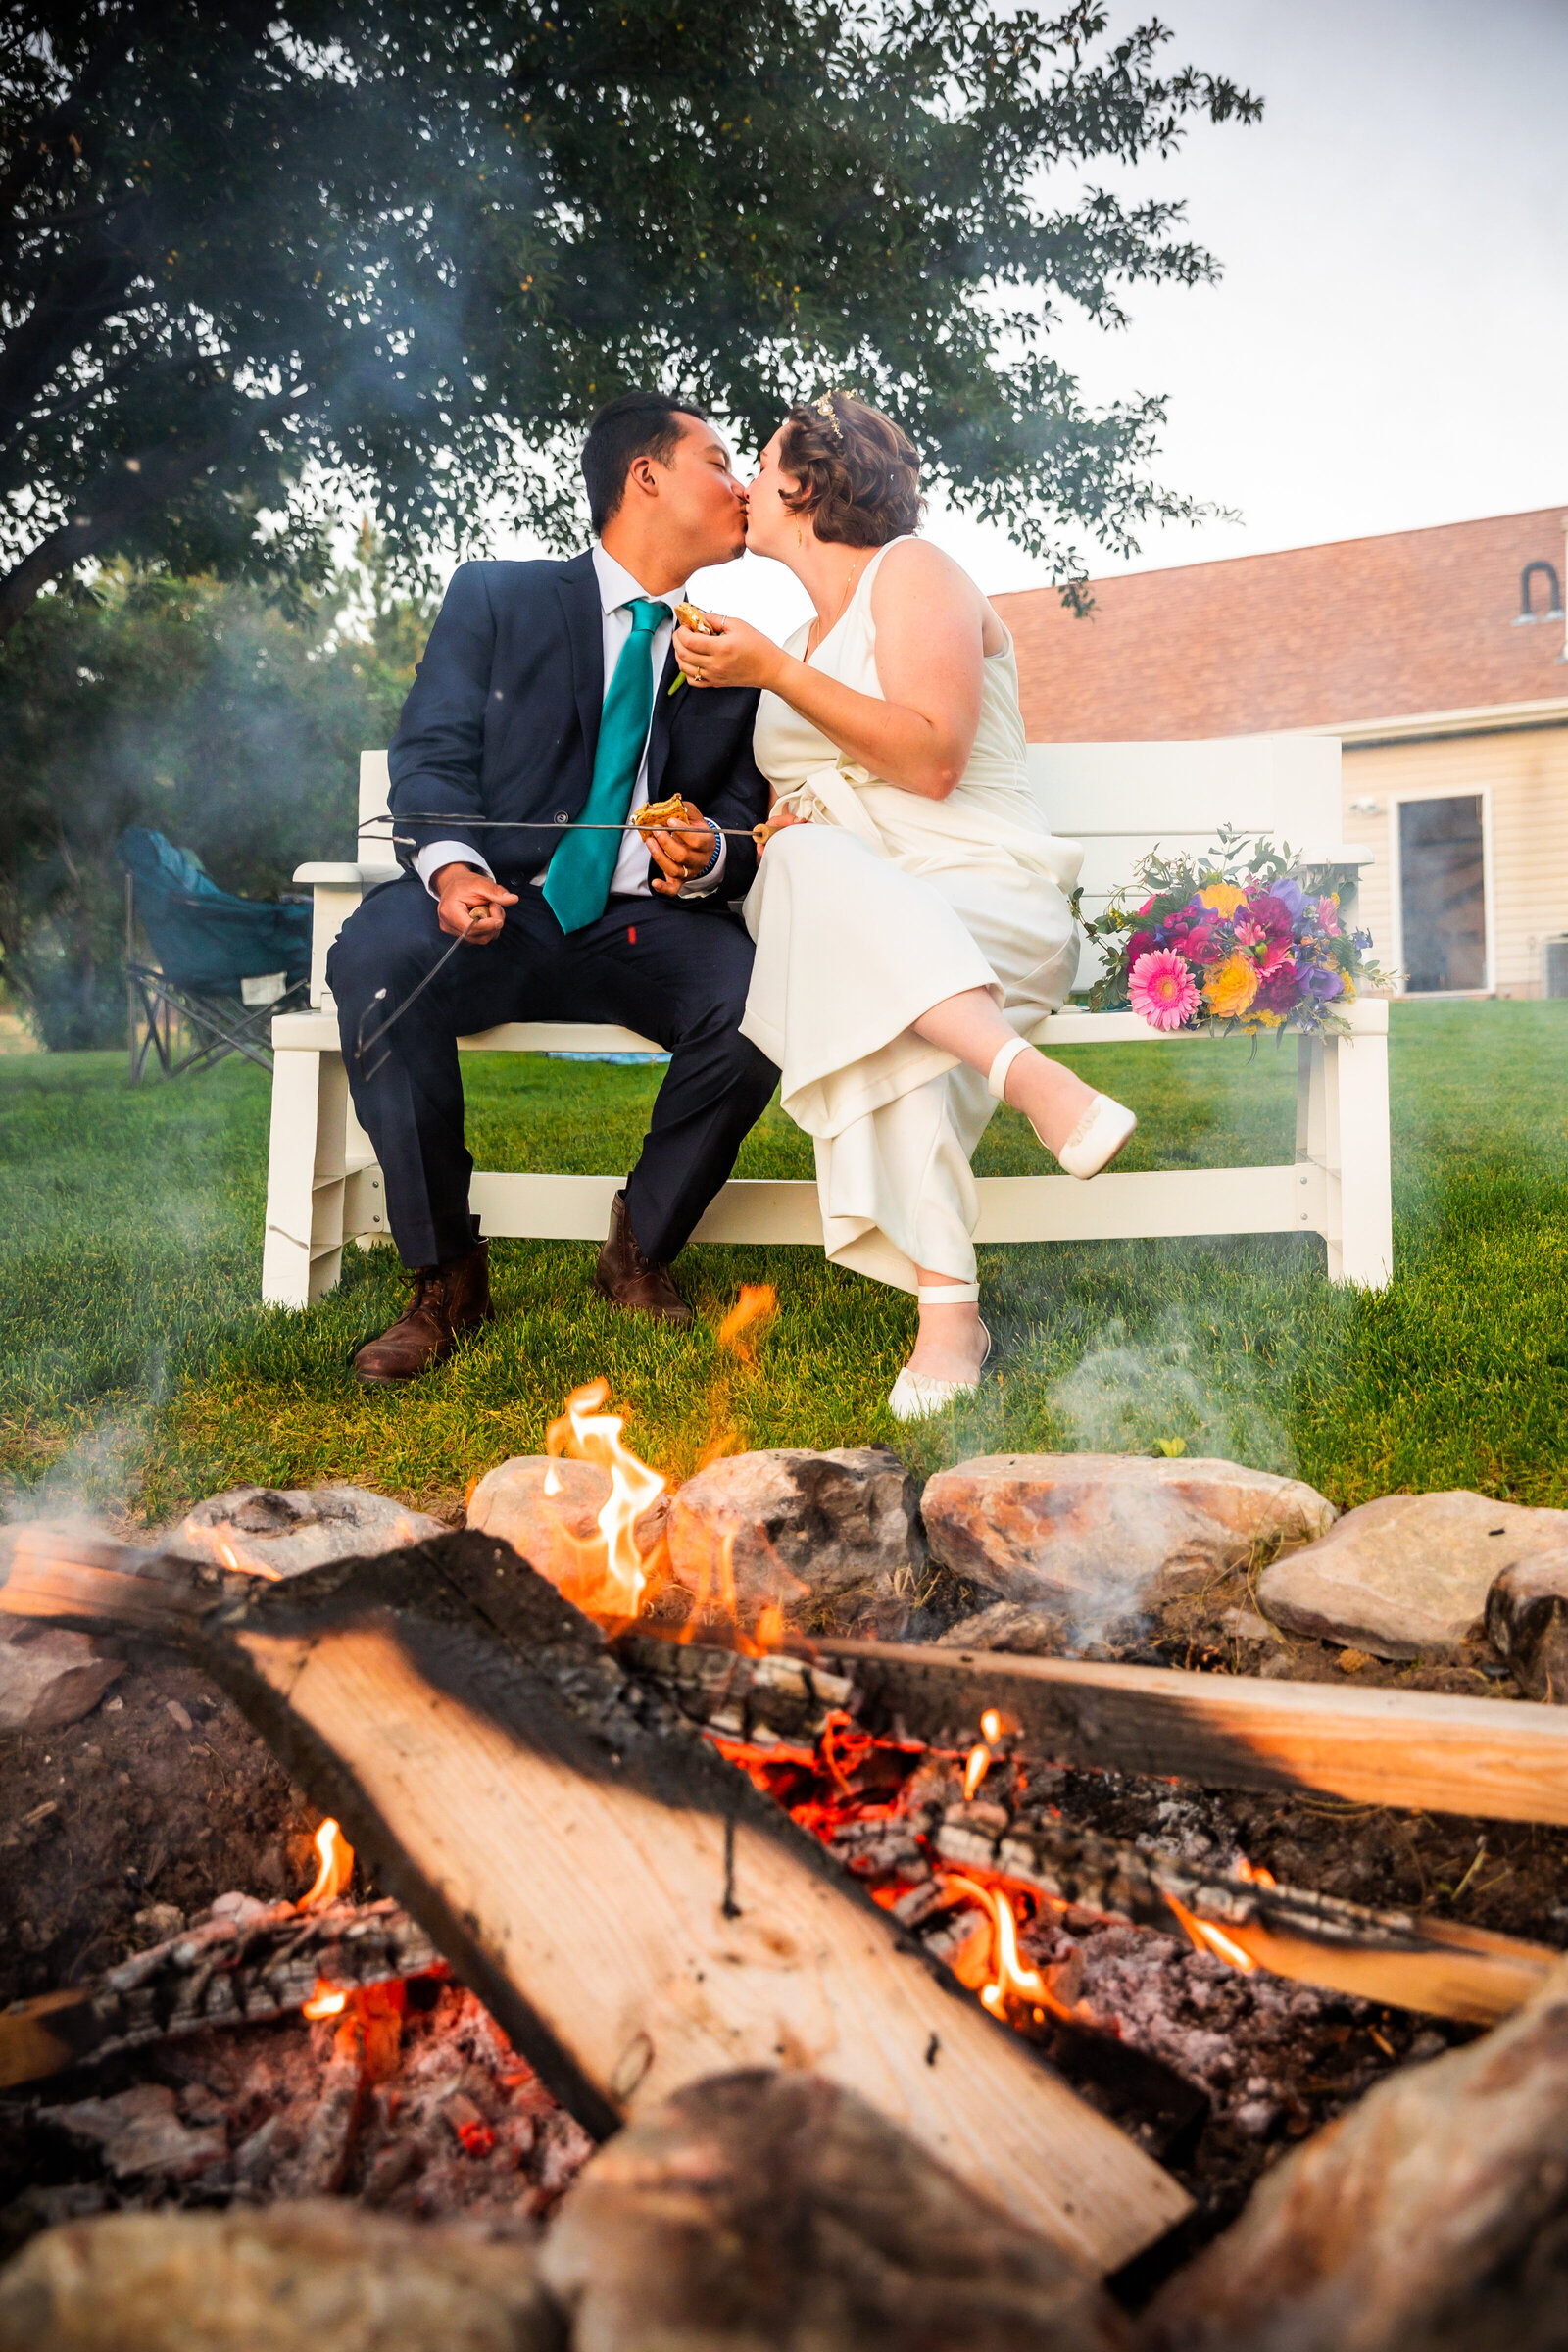 Jackson Hole photographers capture couple roasting marshmallows after Grand Teton wedding